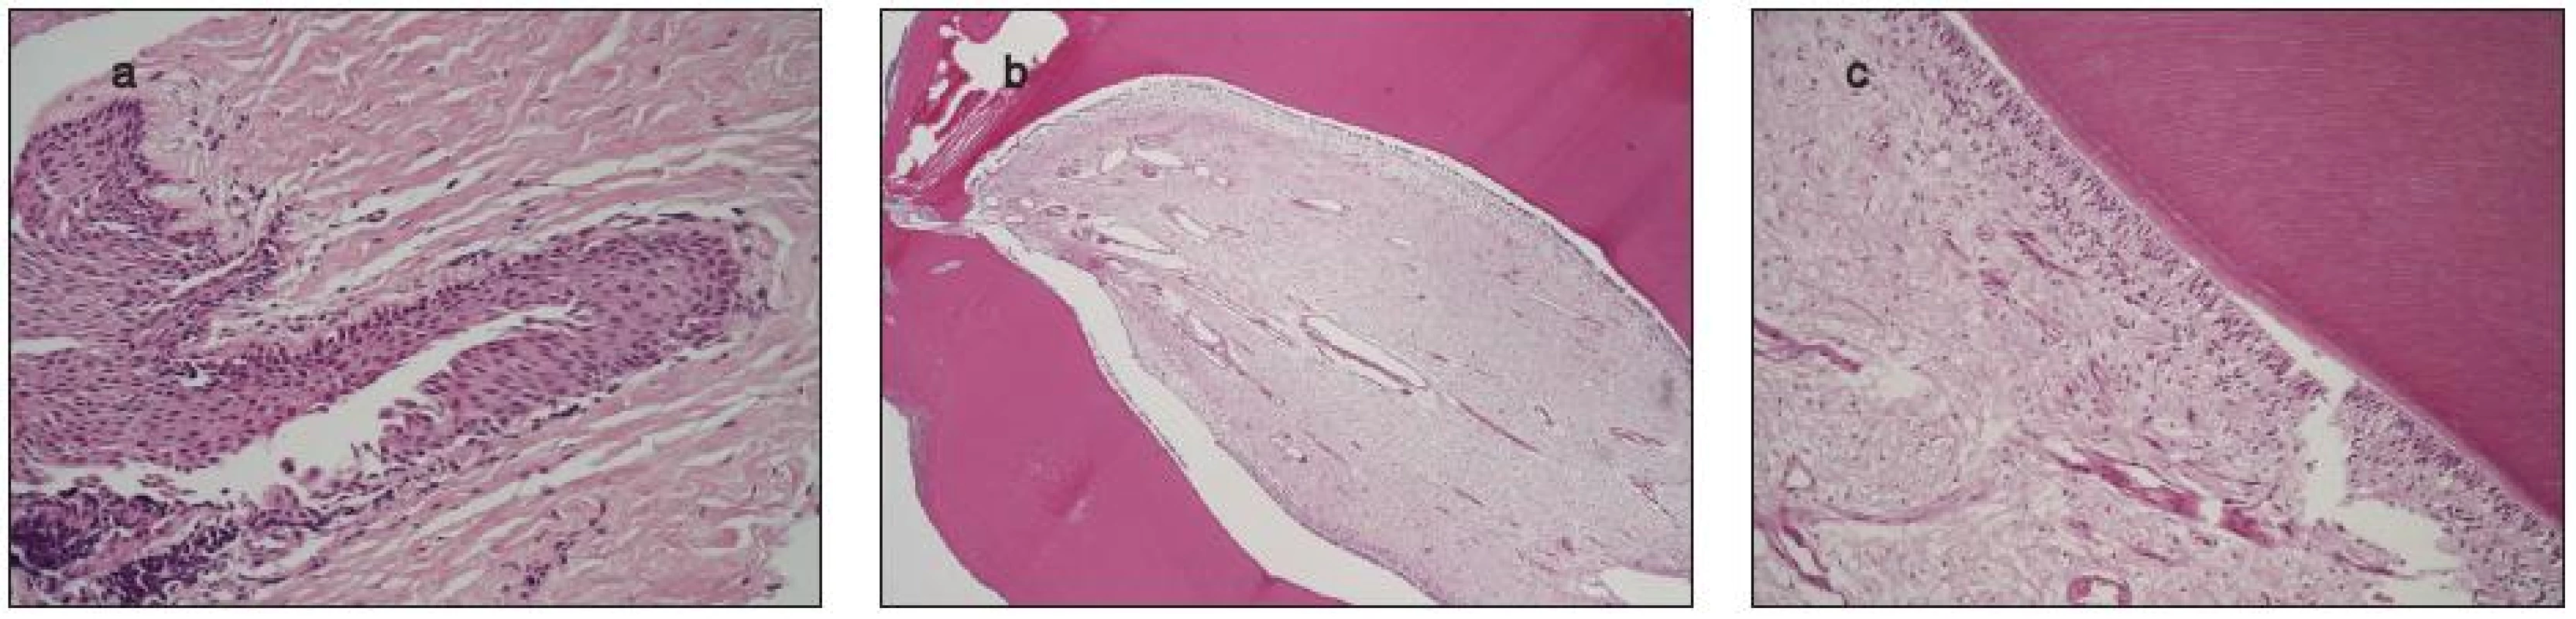 Histologický nález dentálnych štruktúr – 6a, b, c
6a – Cystický útvar s fibróznym puzdrom je vystlaný nerohovatejúcim dlaždicovým epitelom
6b – Súčasťou cystickej dutiny je útvar pripominajúci zub, tvorený dentínom a pulpou z cievnatého fibrózneho tkaniva. Od dentínu oddeľuje pulpu vrstva cylindrického epitelu
6c – Cylindrický epitel oddeľujúci dentín od pulpy má svetlú cytoplazmu s jadrami uloženými v rôznej výške .Farbenie-Hematoxylín a eozín, 25x, 100x